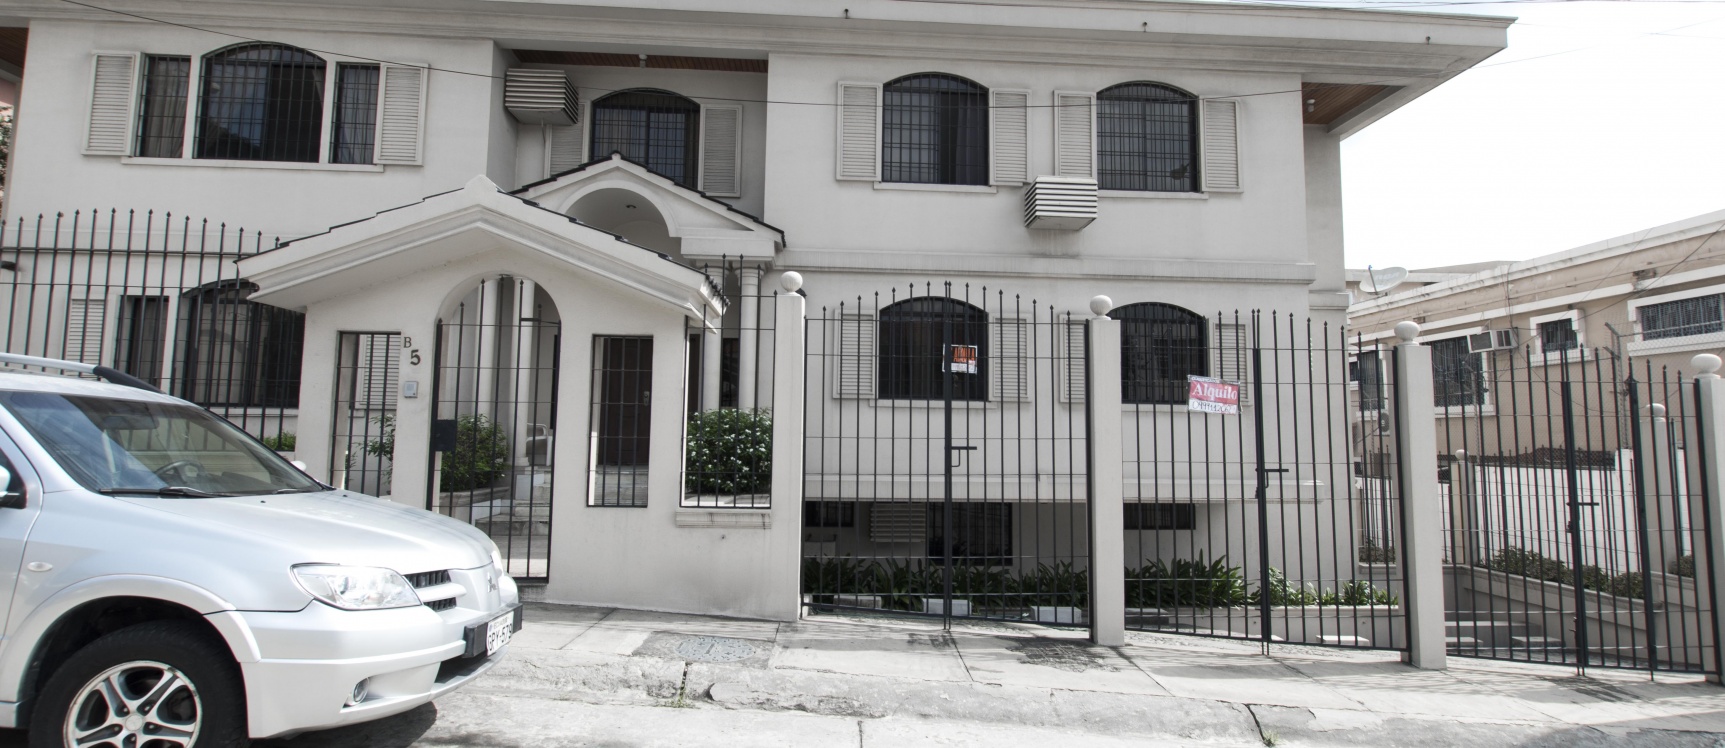 GeoBienes - Suite en alquiler ubicado en la Urbanización Los Parques, Ceibos - Plusvalia Guayaquil Casas de venta y alquiler Inmobiliaria Ecuador